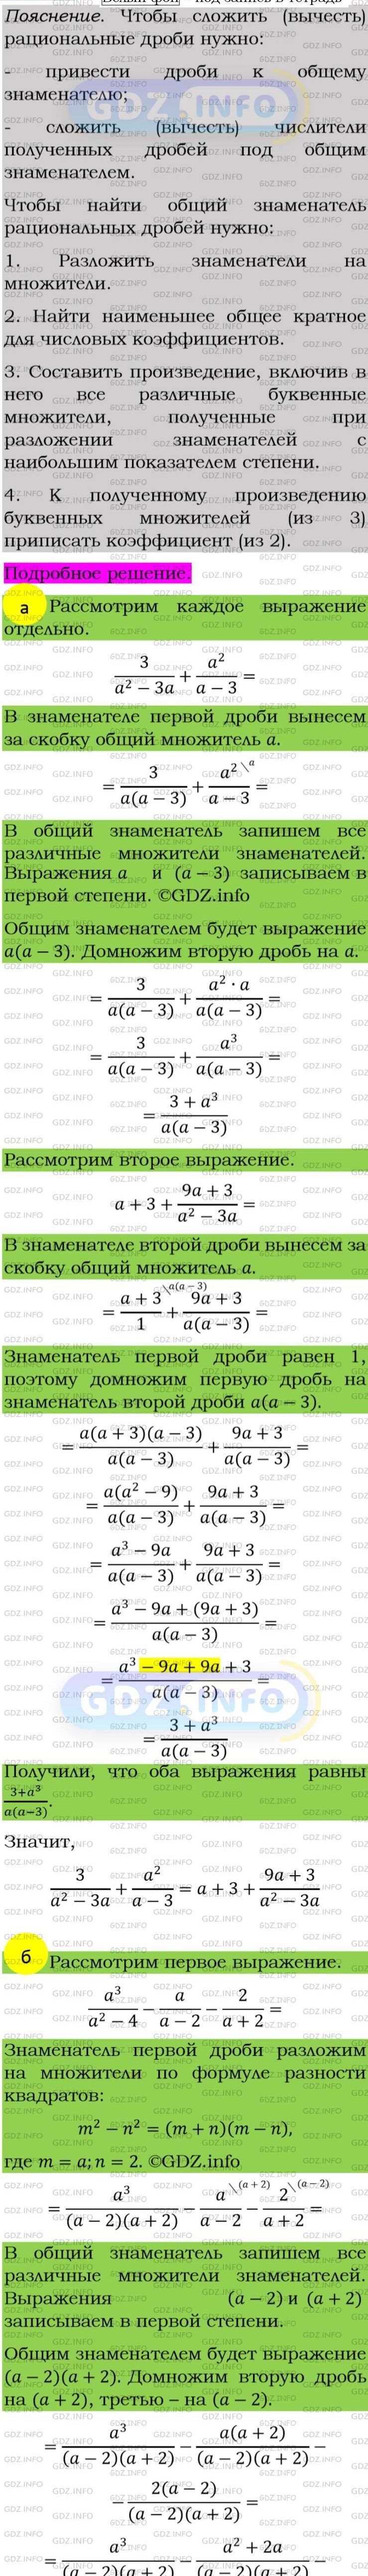 Фото подробного решения: Номер задания №101 из ГДЗ по Алгебре 8 класс: Макарычев Ю.Н.